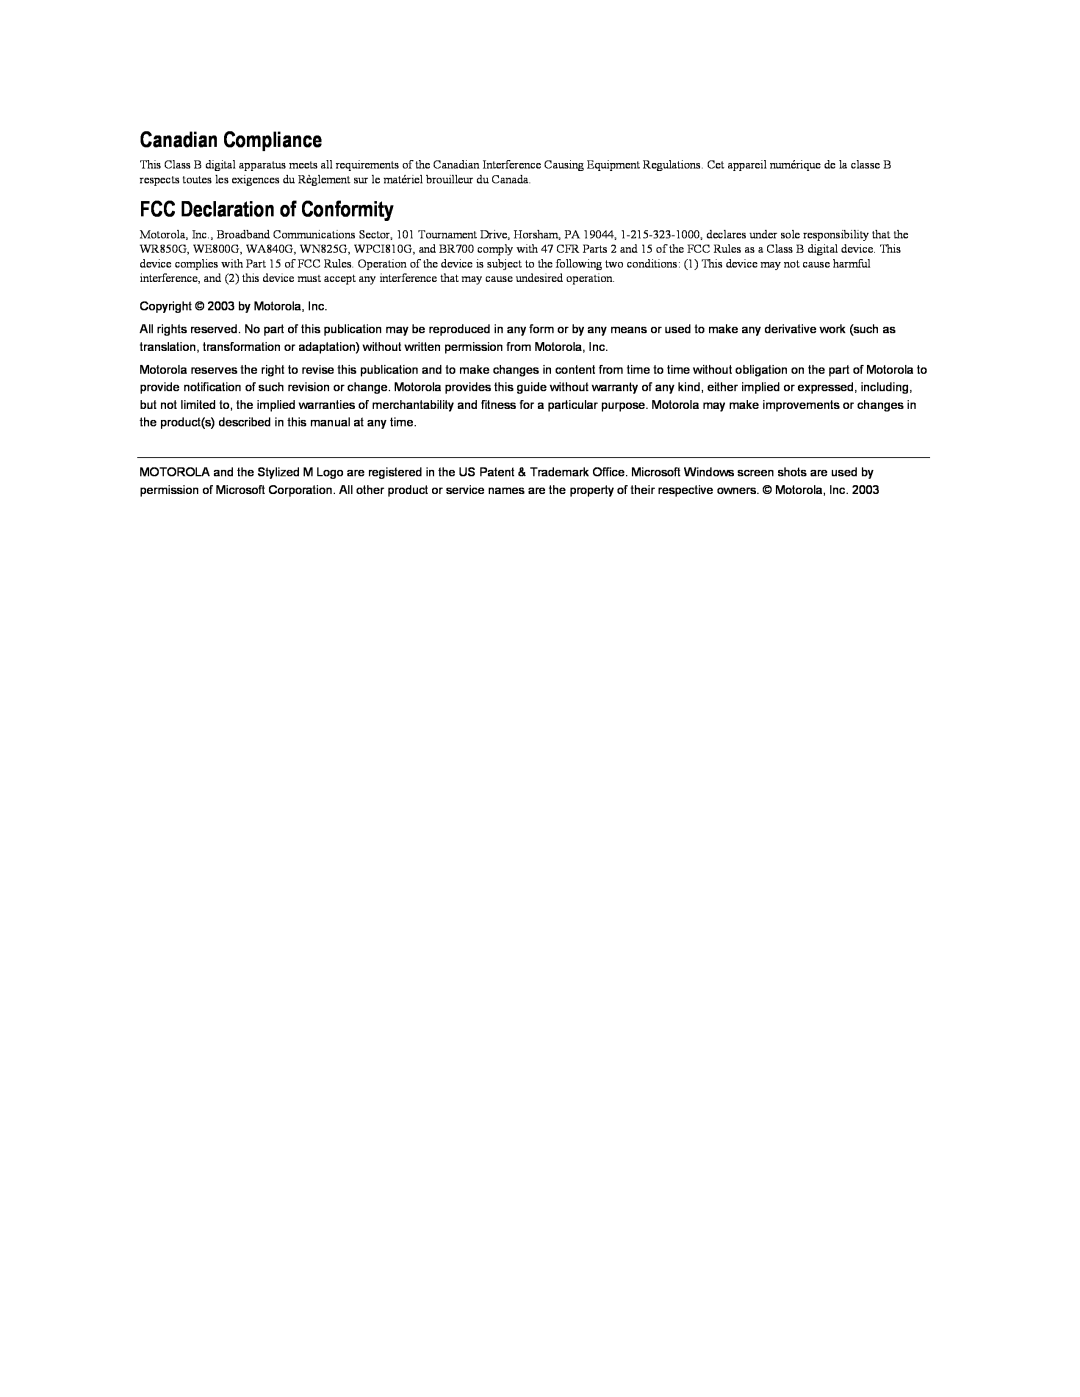 Motorola BR700 manual Canadian Compliance, FCC Declaration of Conformity 